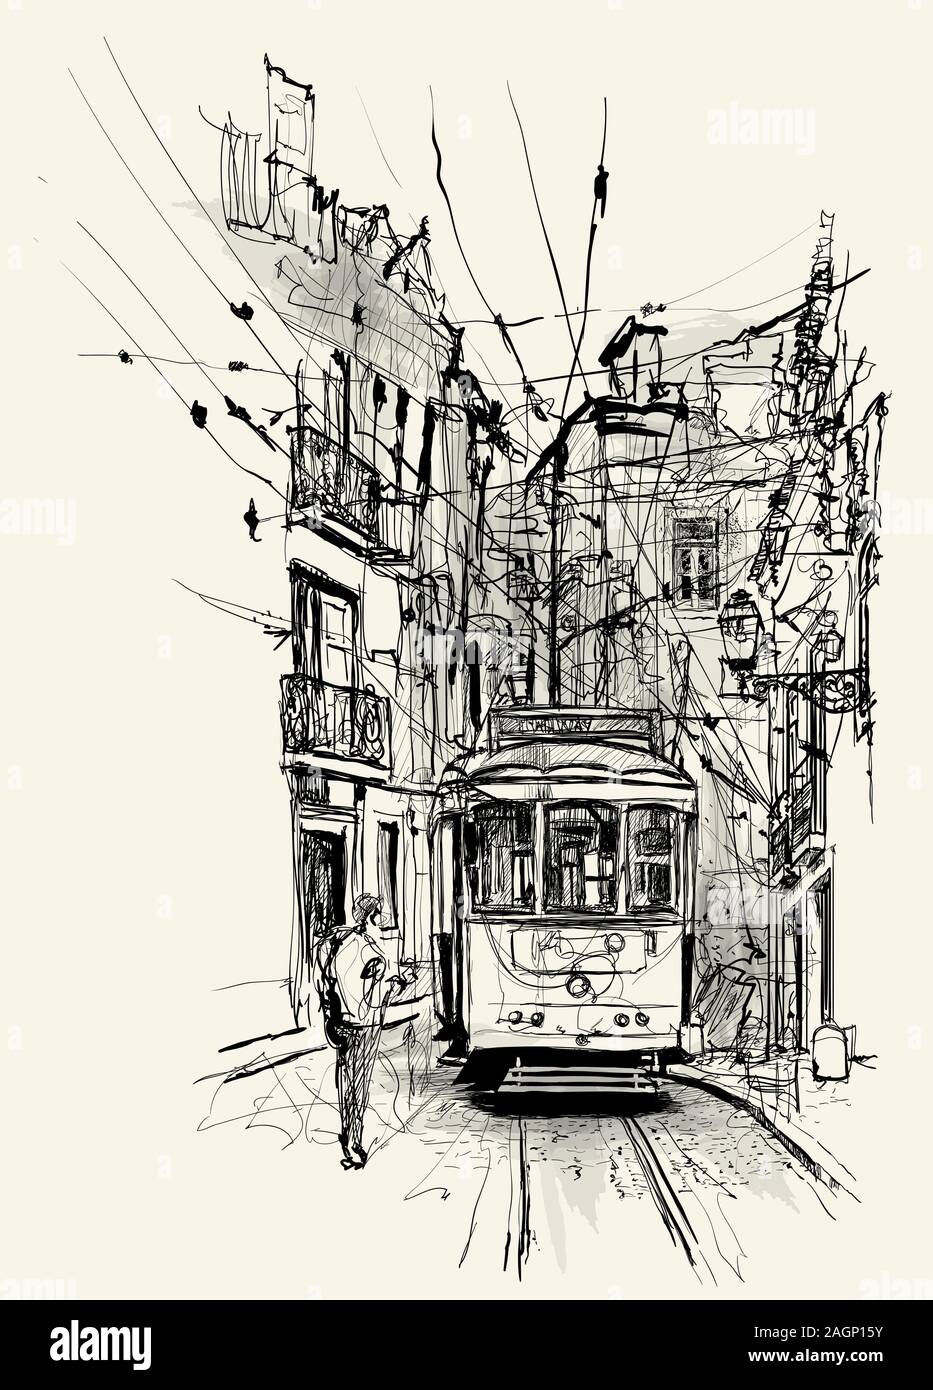 Strada di Lisbona - illustrazione vettoriale (ideale per la stampa su tessuto o carta, poster o di sfondo, la decorazione della casa) Illustrazione Vettoriale